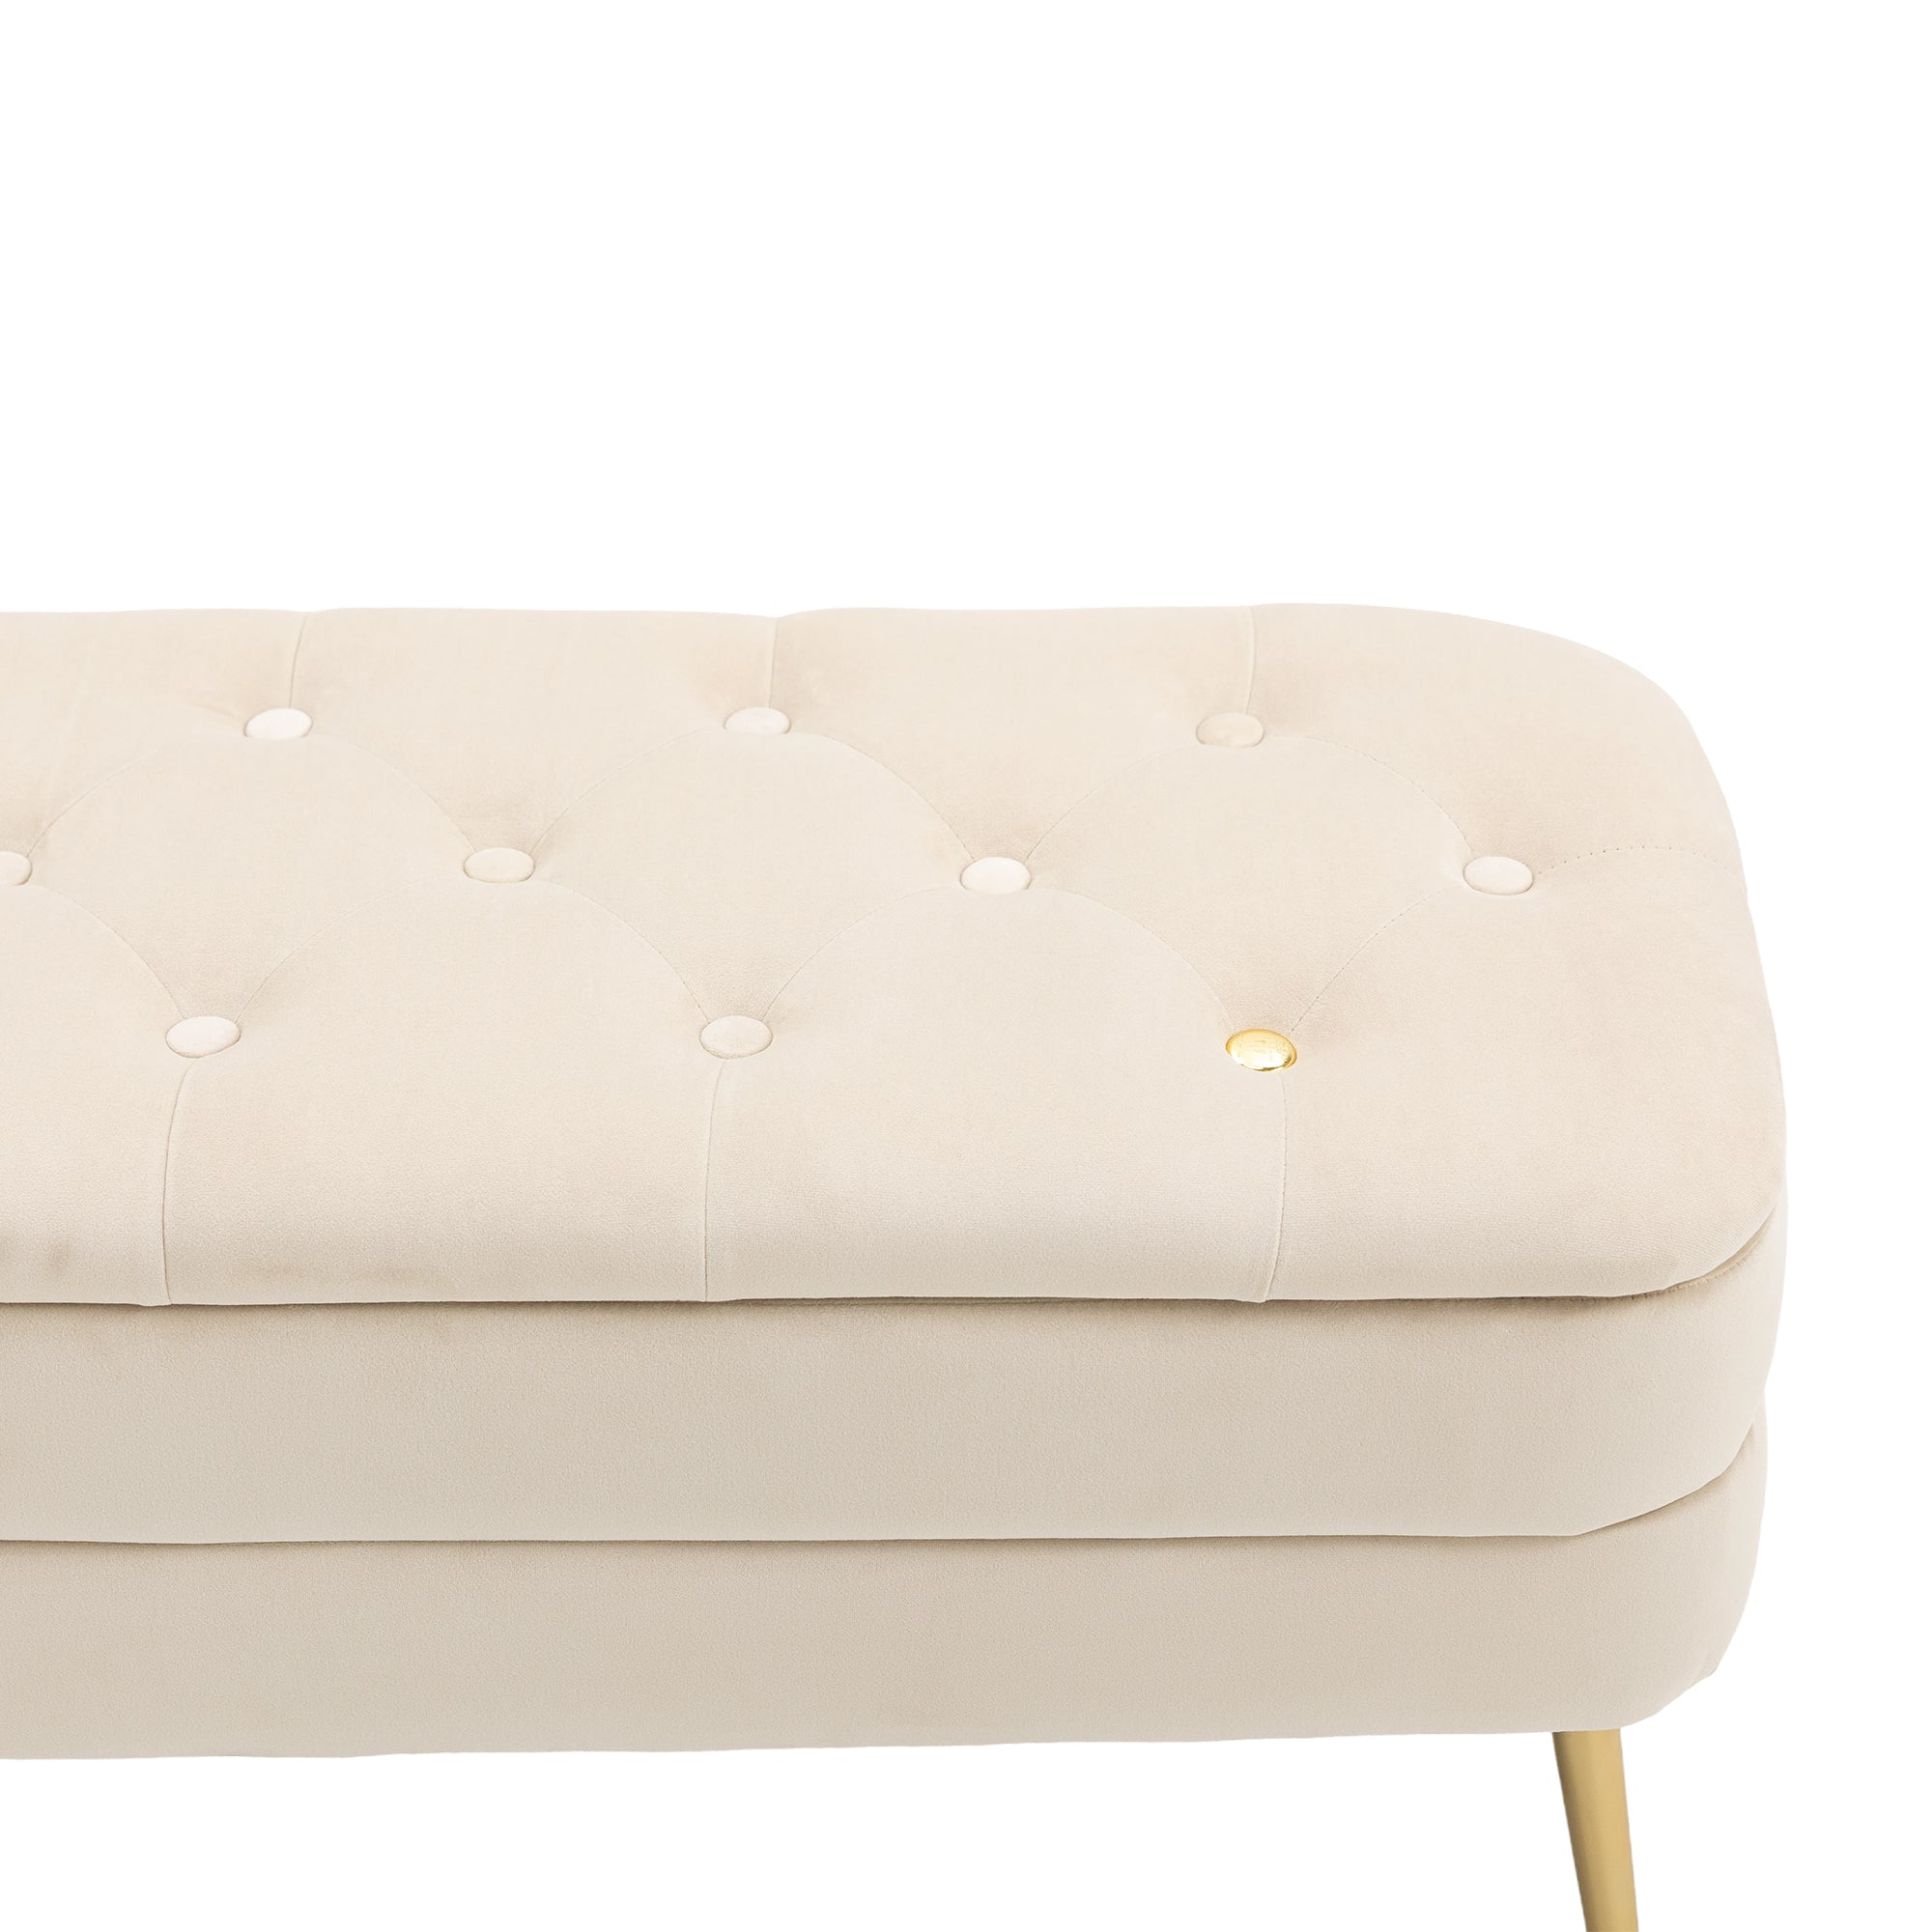 COOLMORE Storage Ottoman,Bedroom End Bench,Upholstered beige-velvet